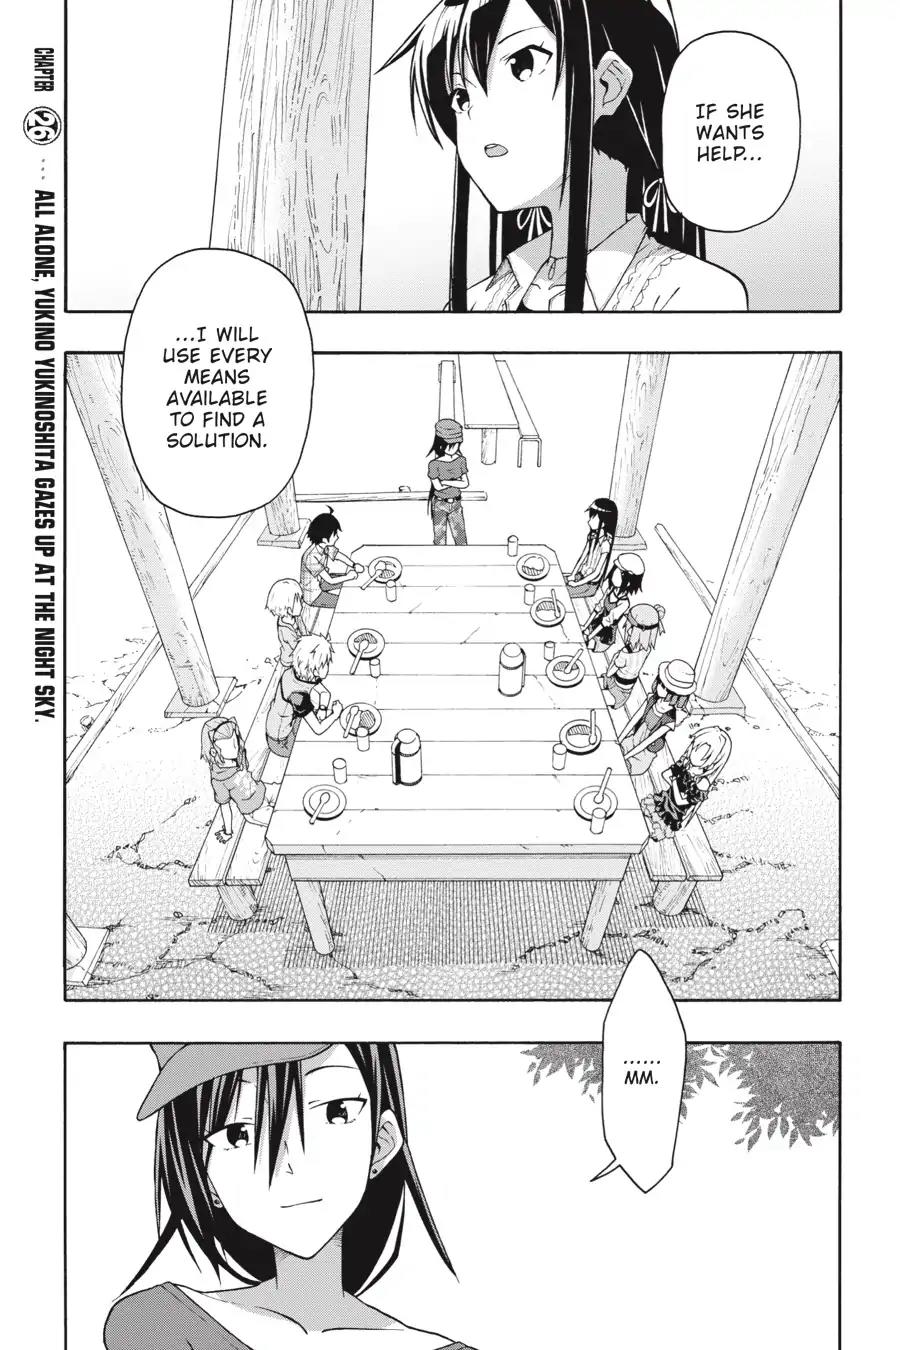 Yahari Ore no Seishun Rabukome wa Machigatte Iru. @ Comic Vol.5 Chapter 26: